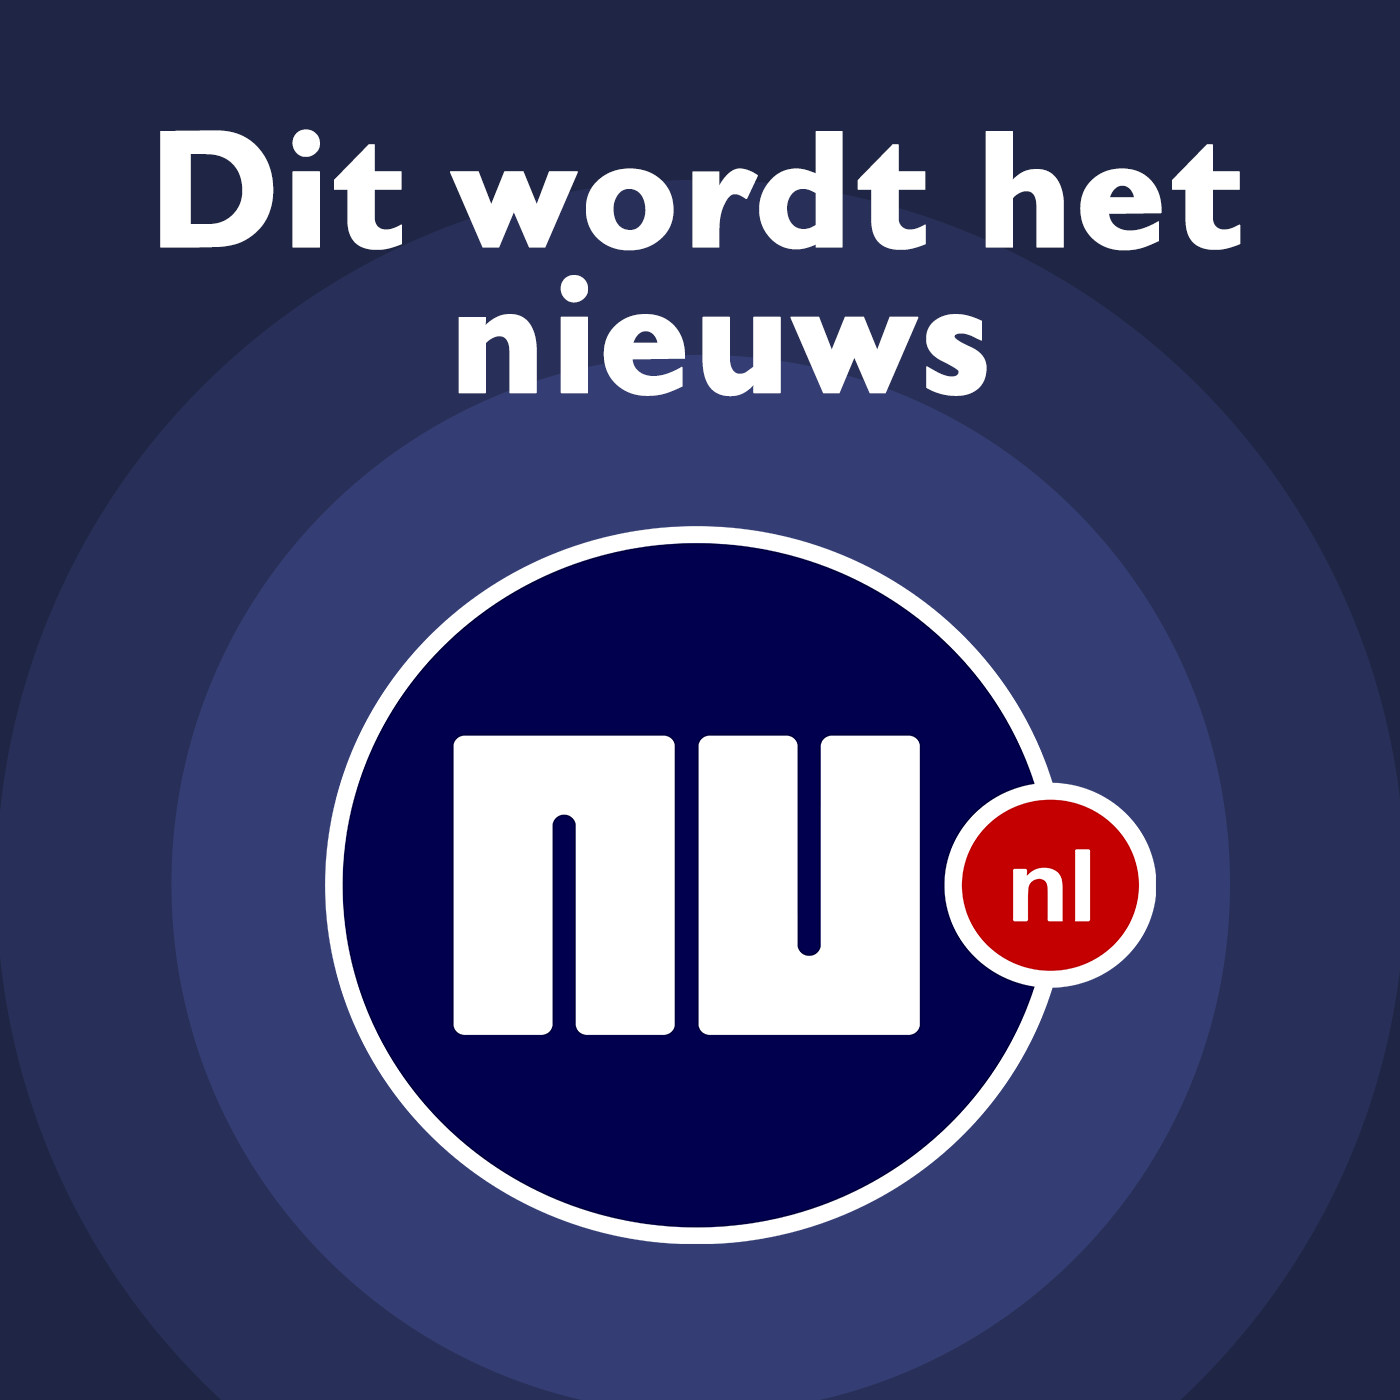 NU.nl Dit wordt het nieuws logo